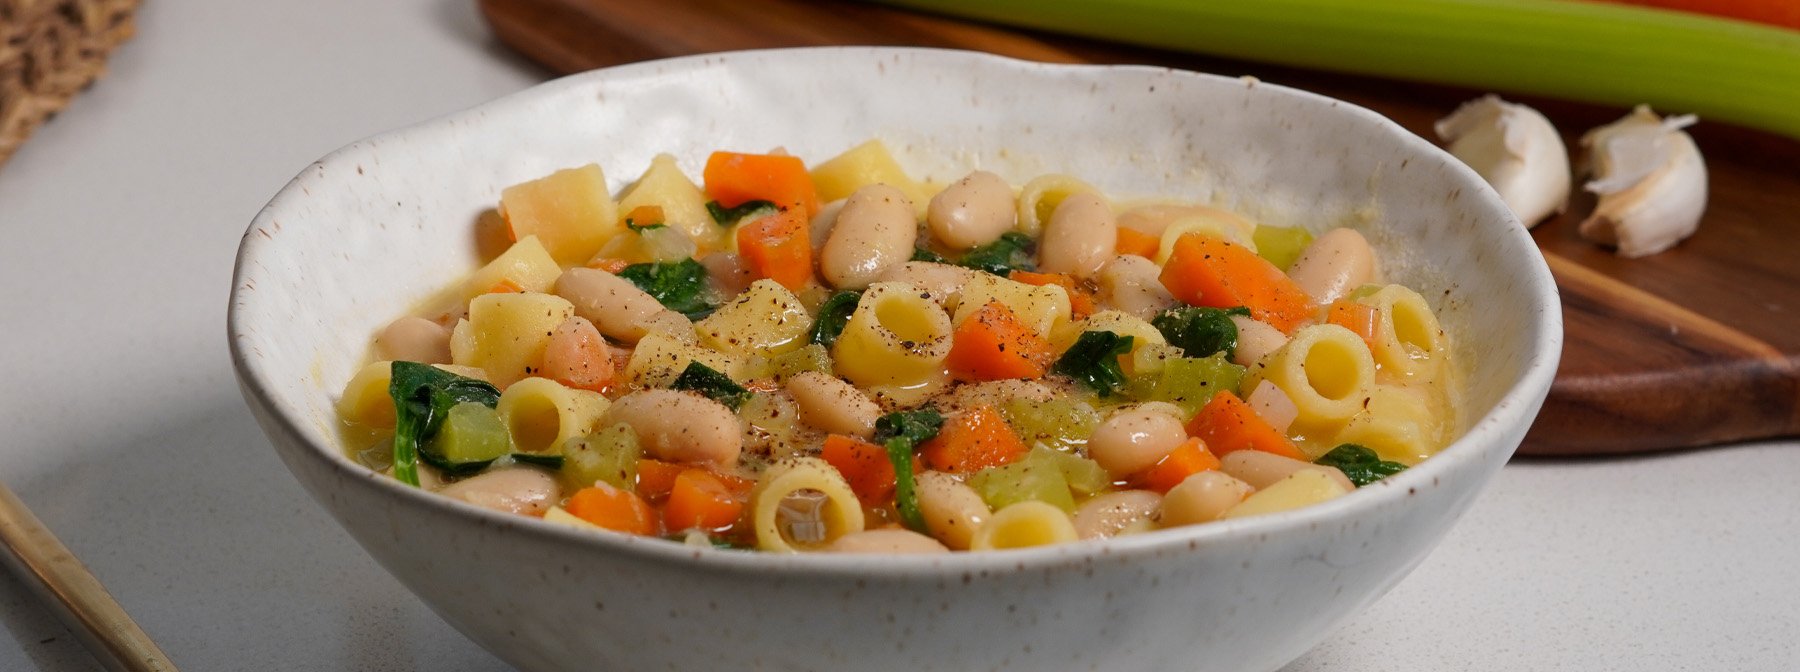 Nahrhafte Suppe zur Verbesserung der Darmgesundheit